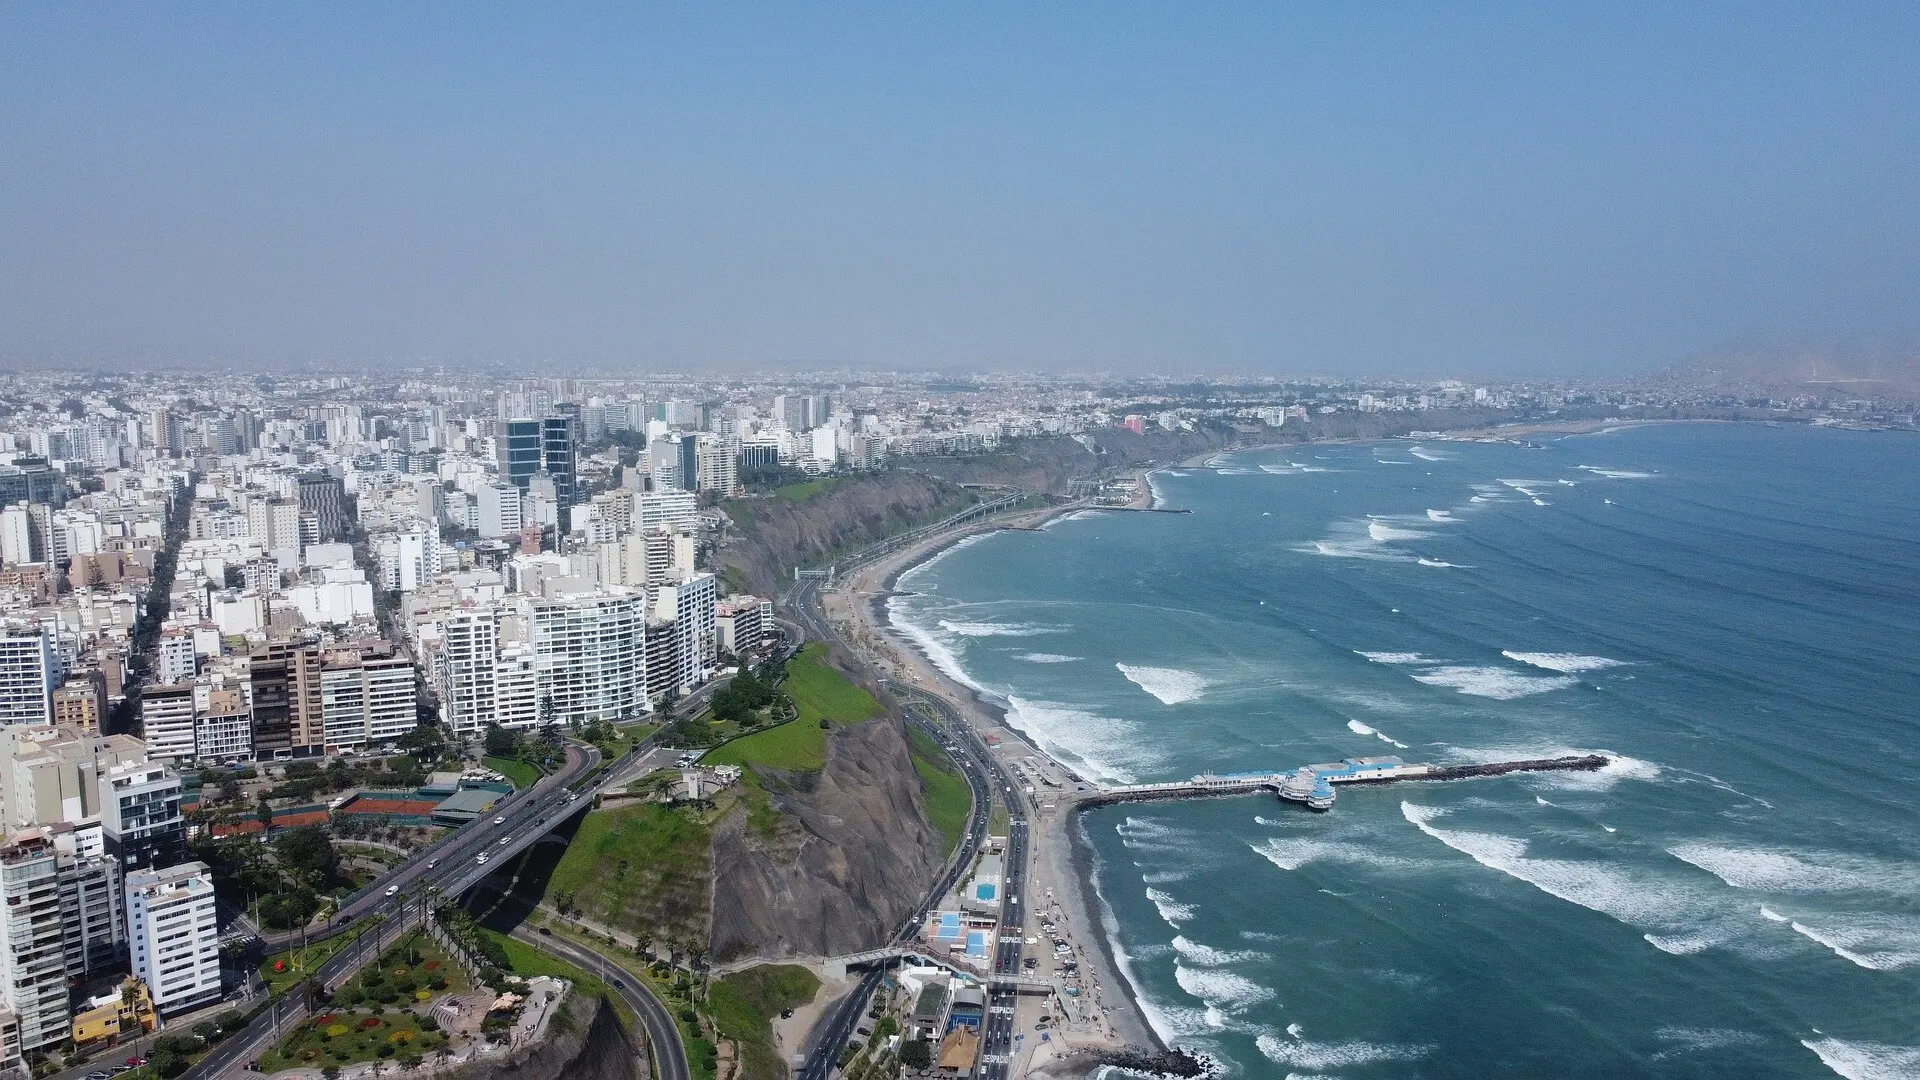 Image of Lima, Peru